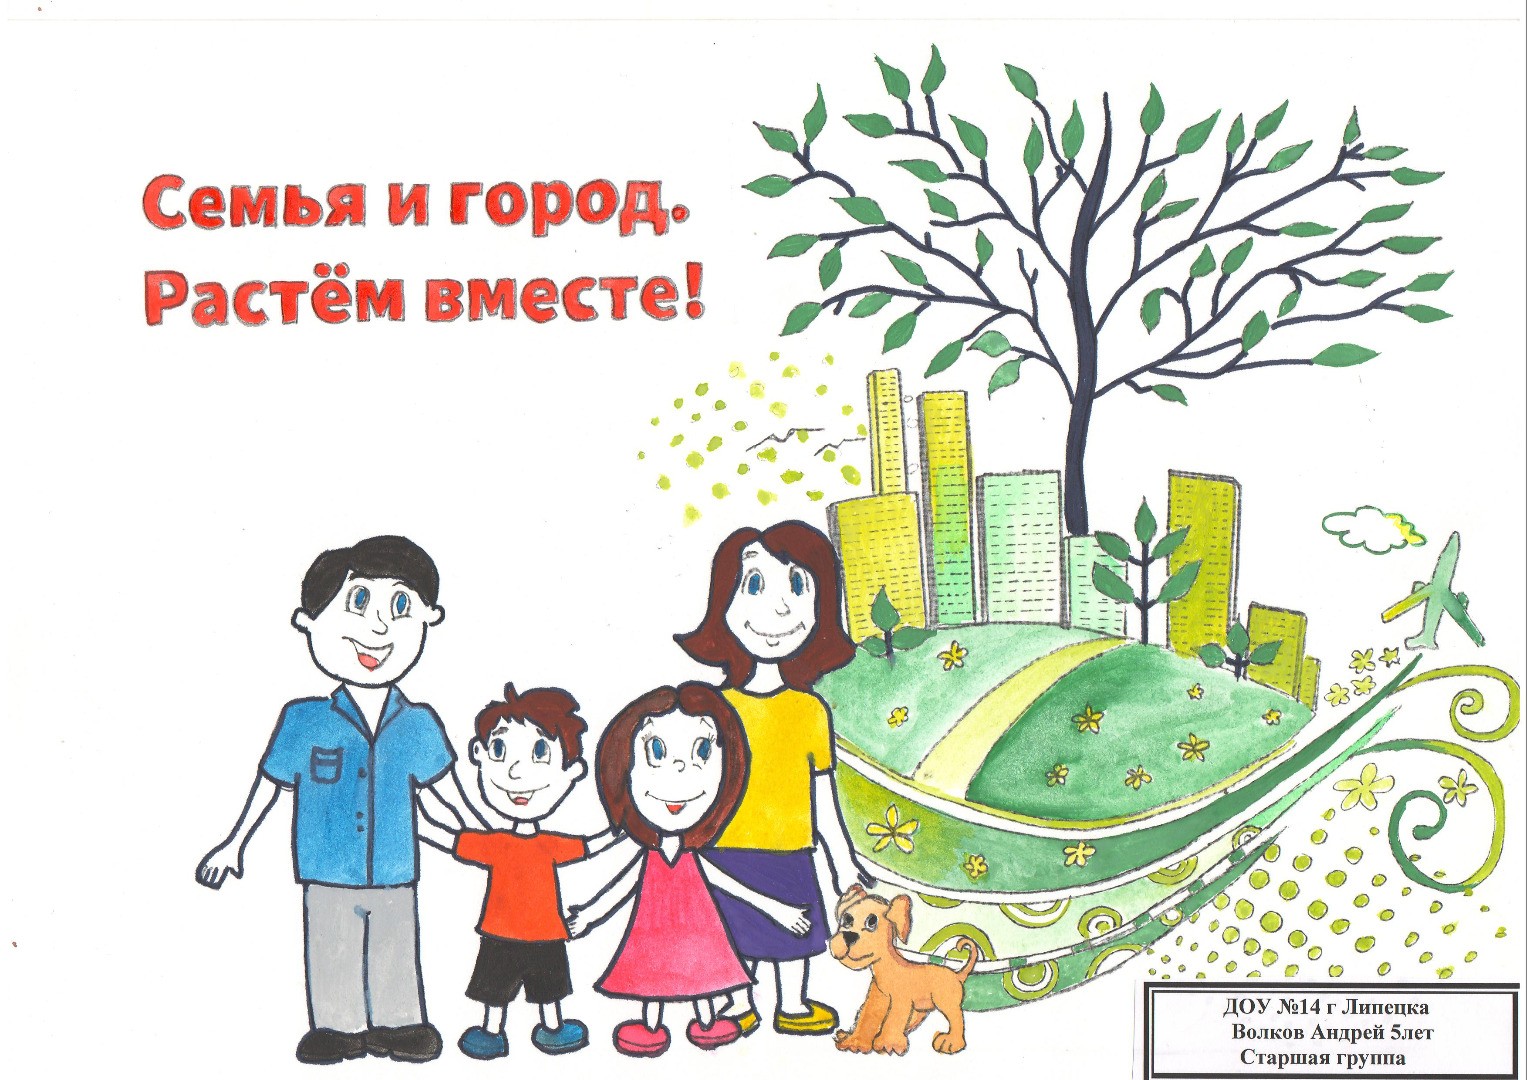 Конкурс логотипов «Семья и город Растем вместе!»